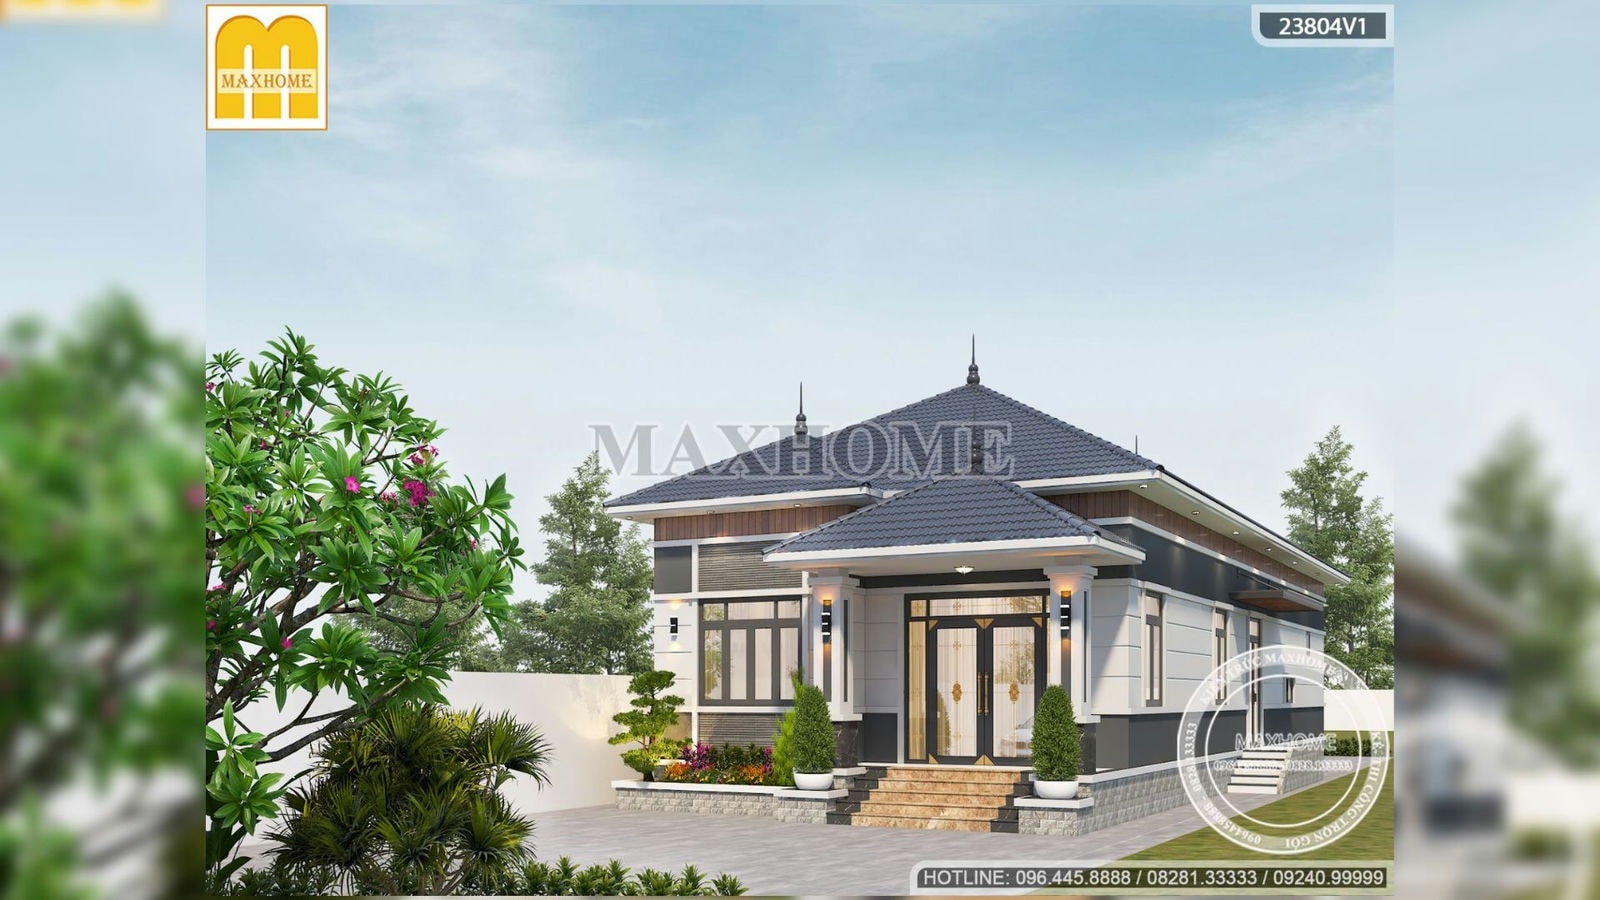 Mẫu nhà vườn mái Nhật đẹp như mơ do Maxhome thiết kế tại Tây Ninh I MH01979